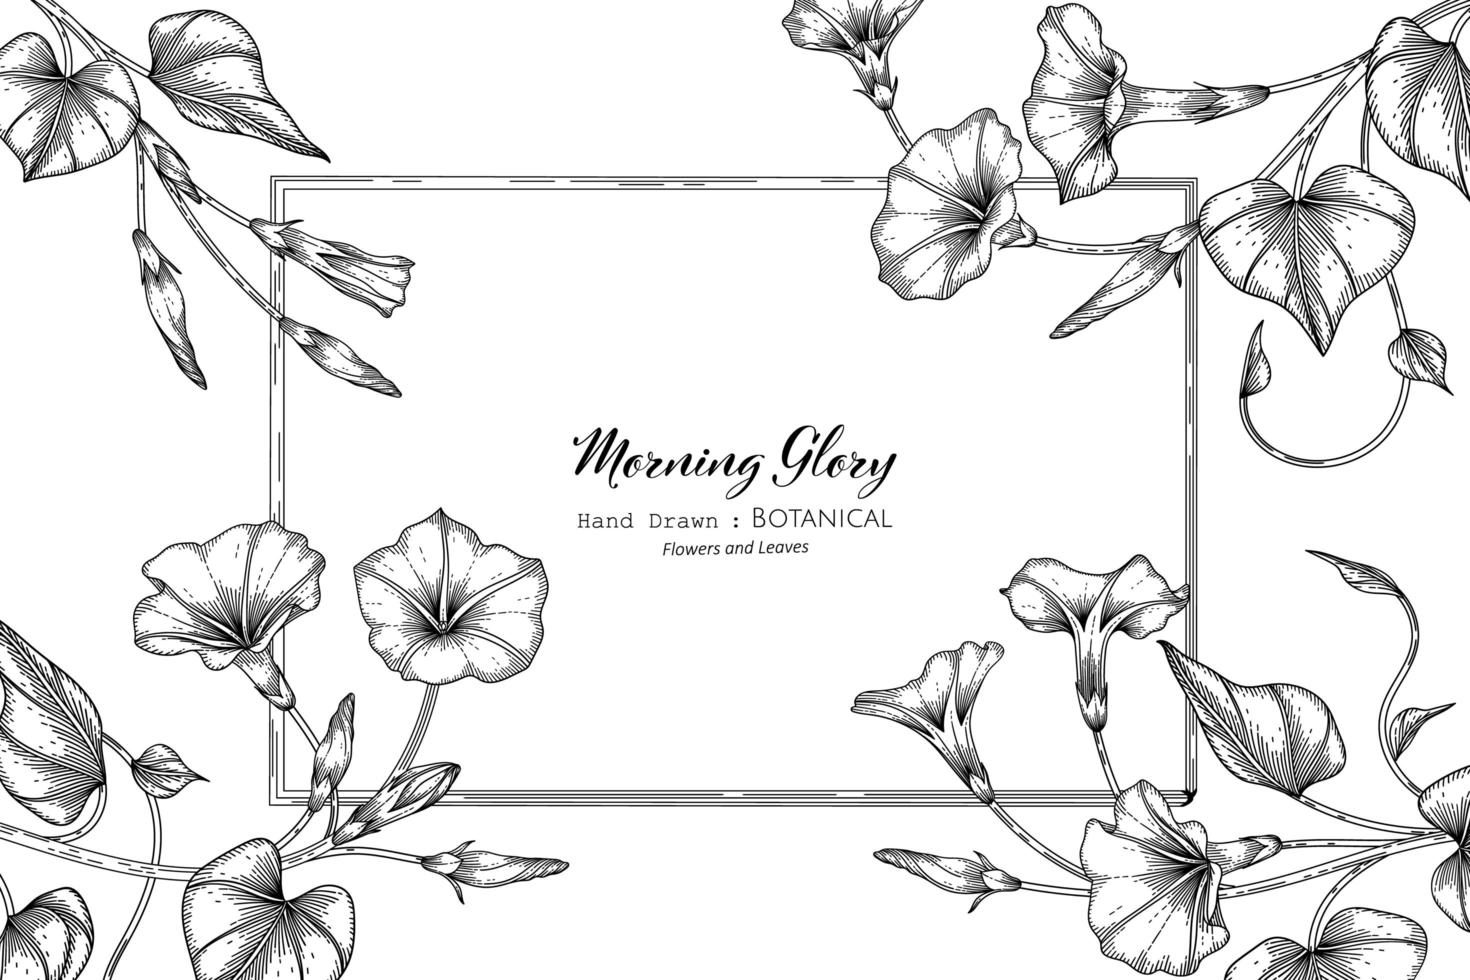 morning glory blomma och blad handritad botanisk illustration med kontur vektor